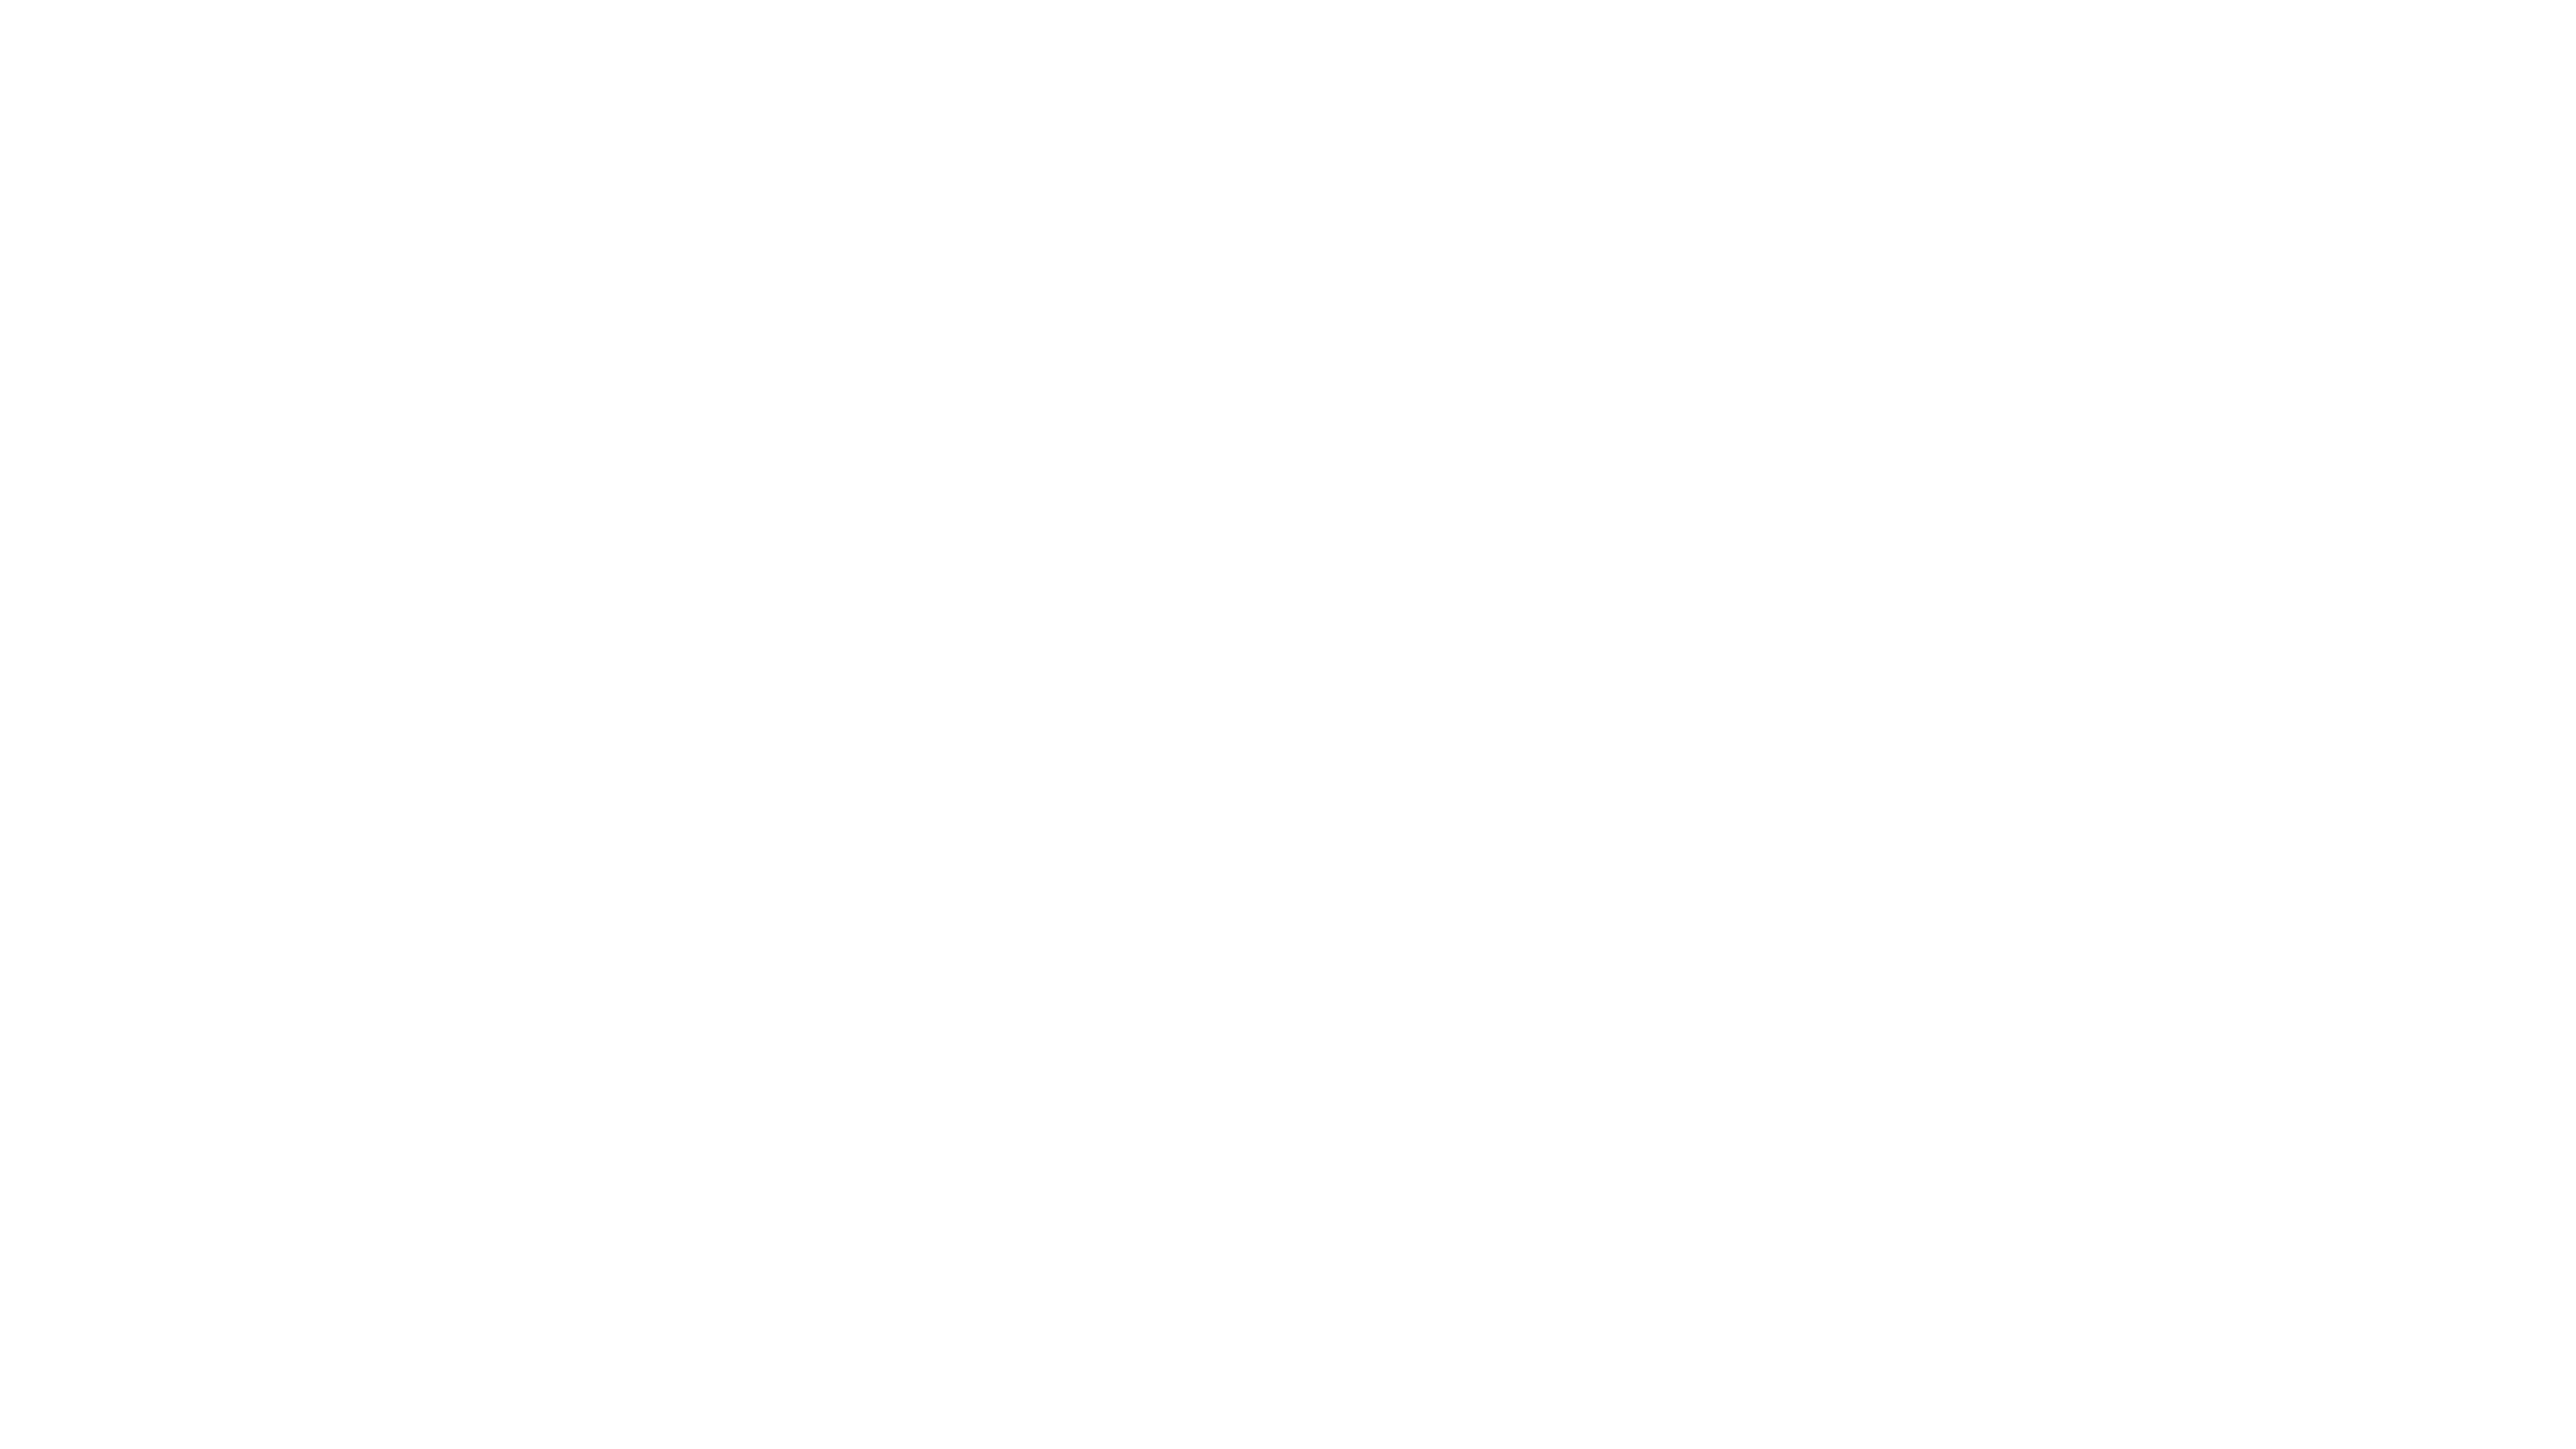 Big Shot Season 2